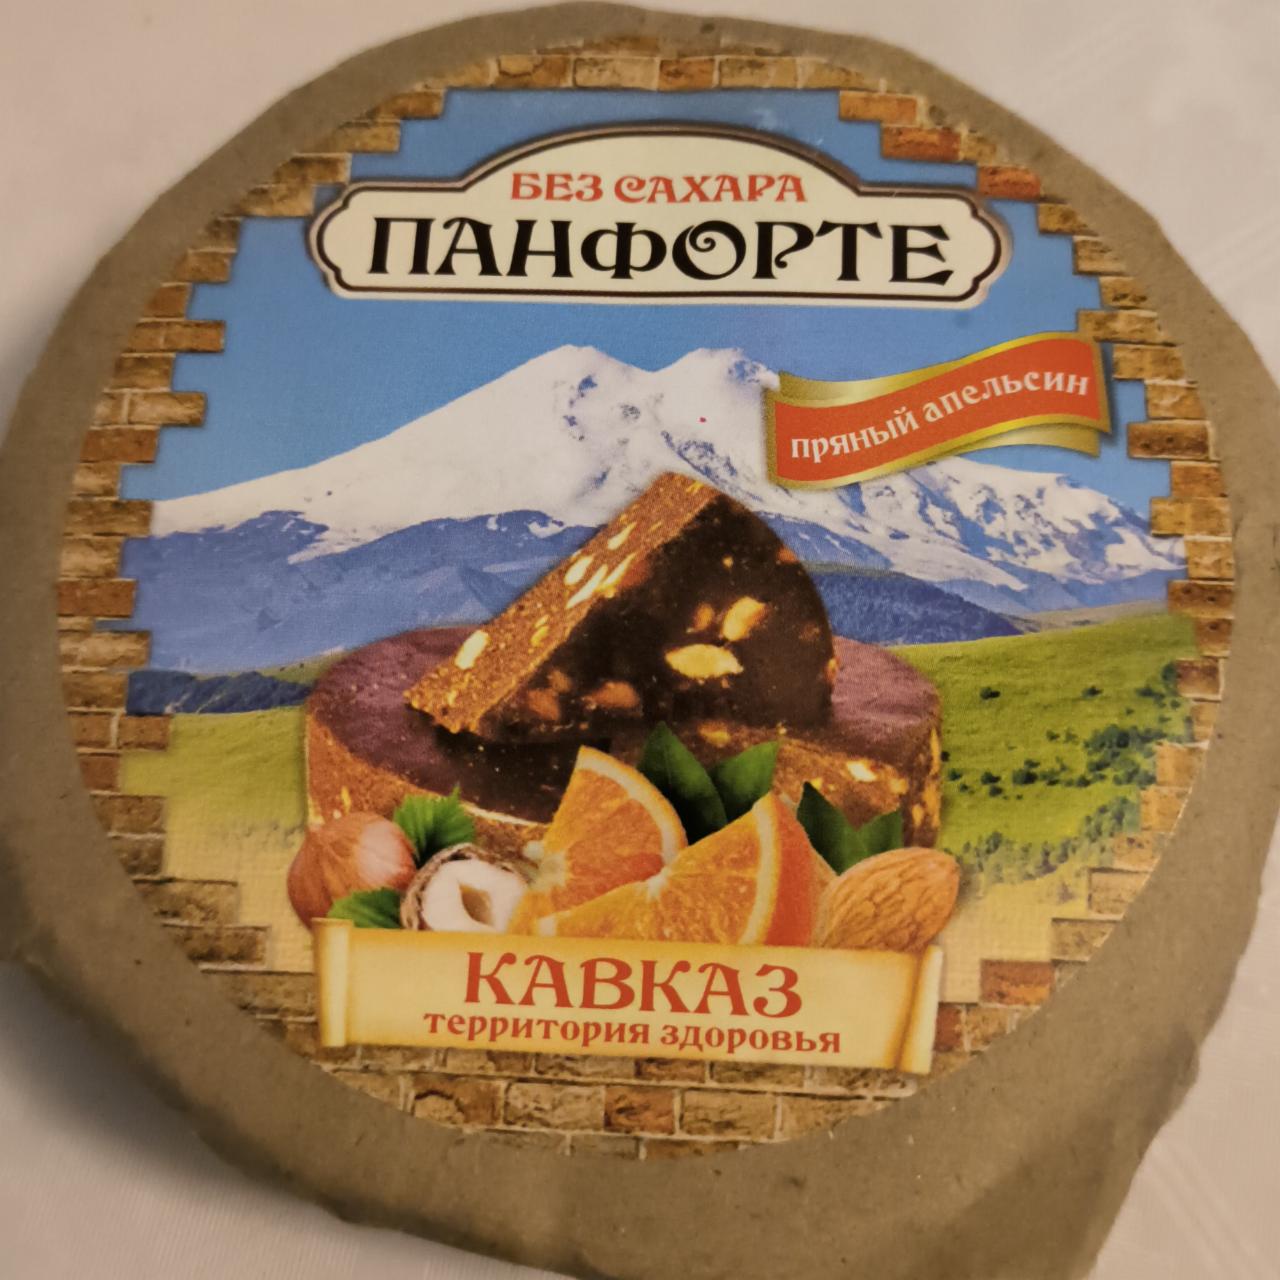 Фото - десерт фруктовый панфорте без сахара пряный апельсин Кавказ территория здоровья